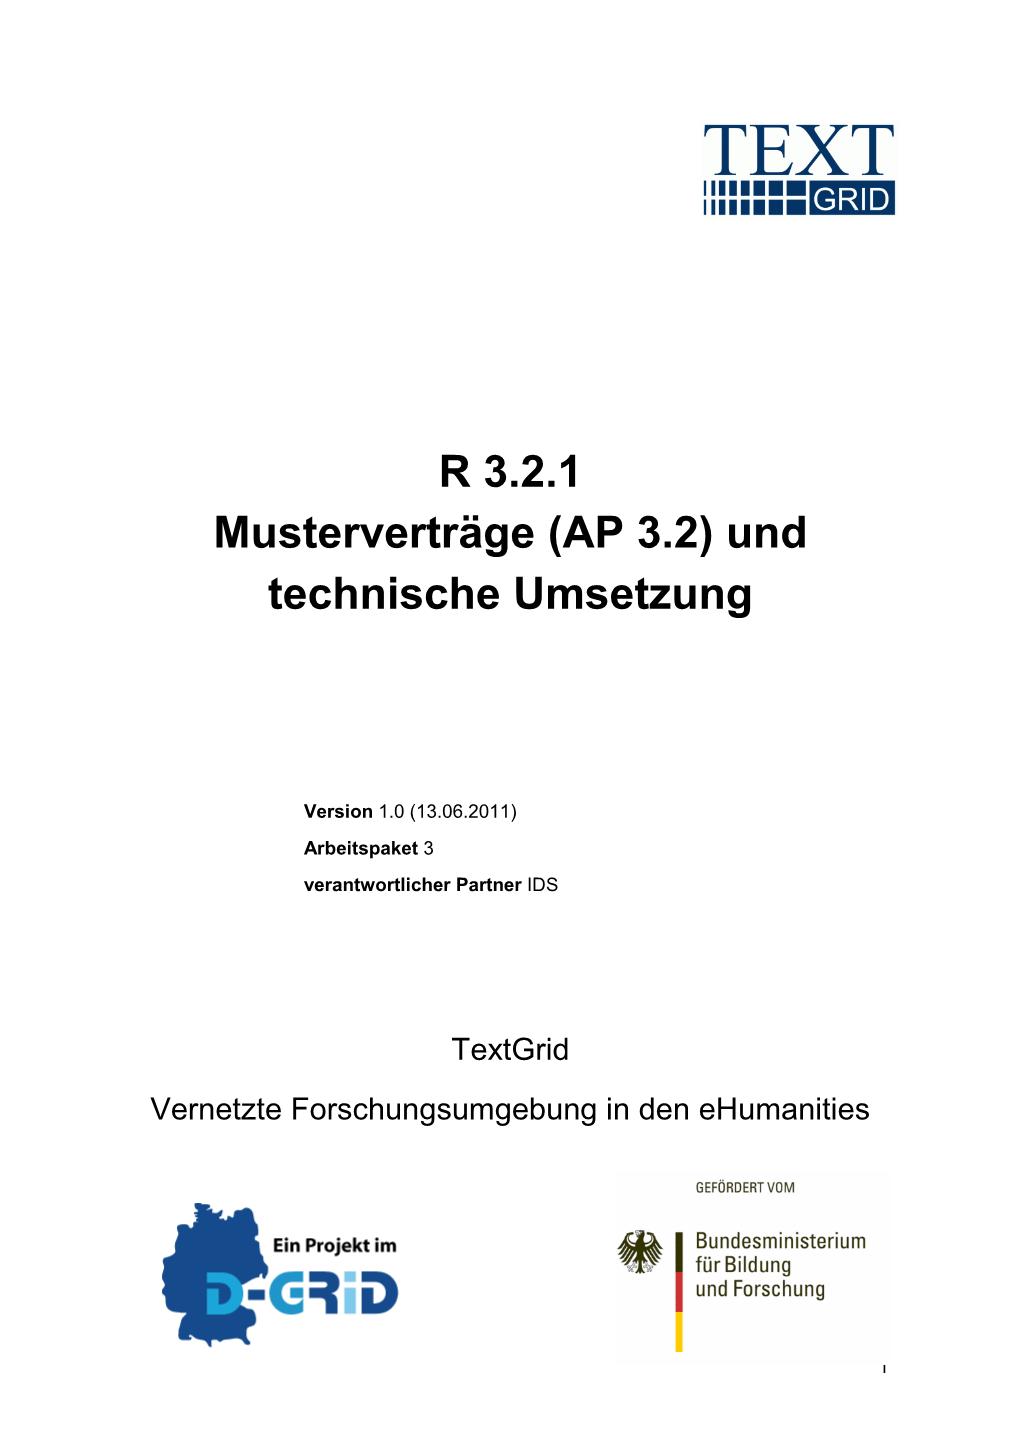 R 3.2.1: Musterverträge Und Technische Umsetzung